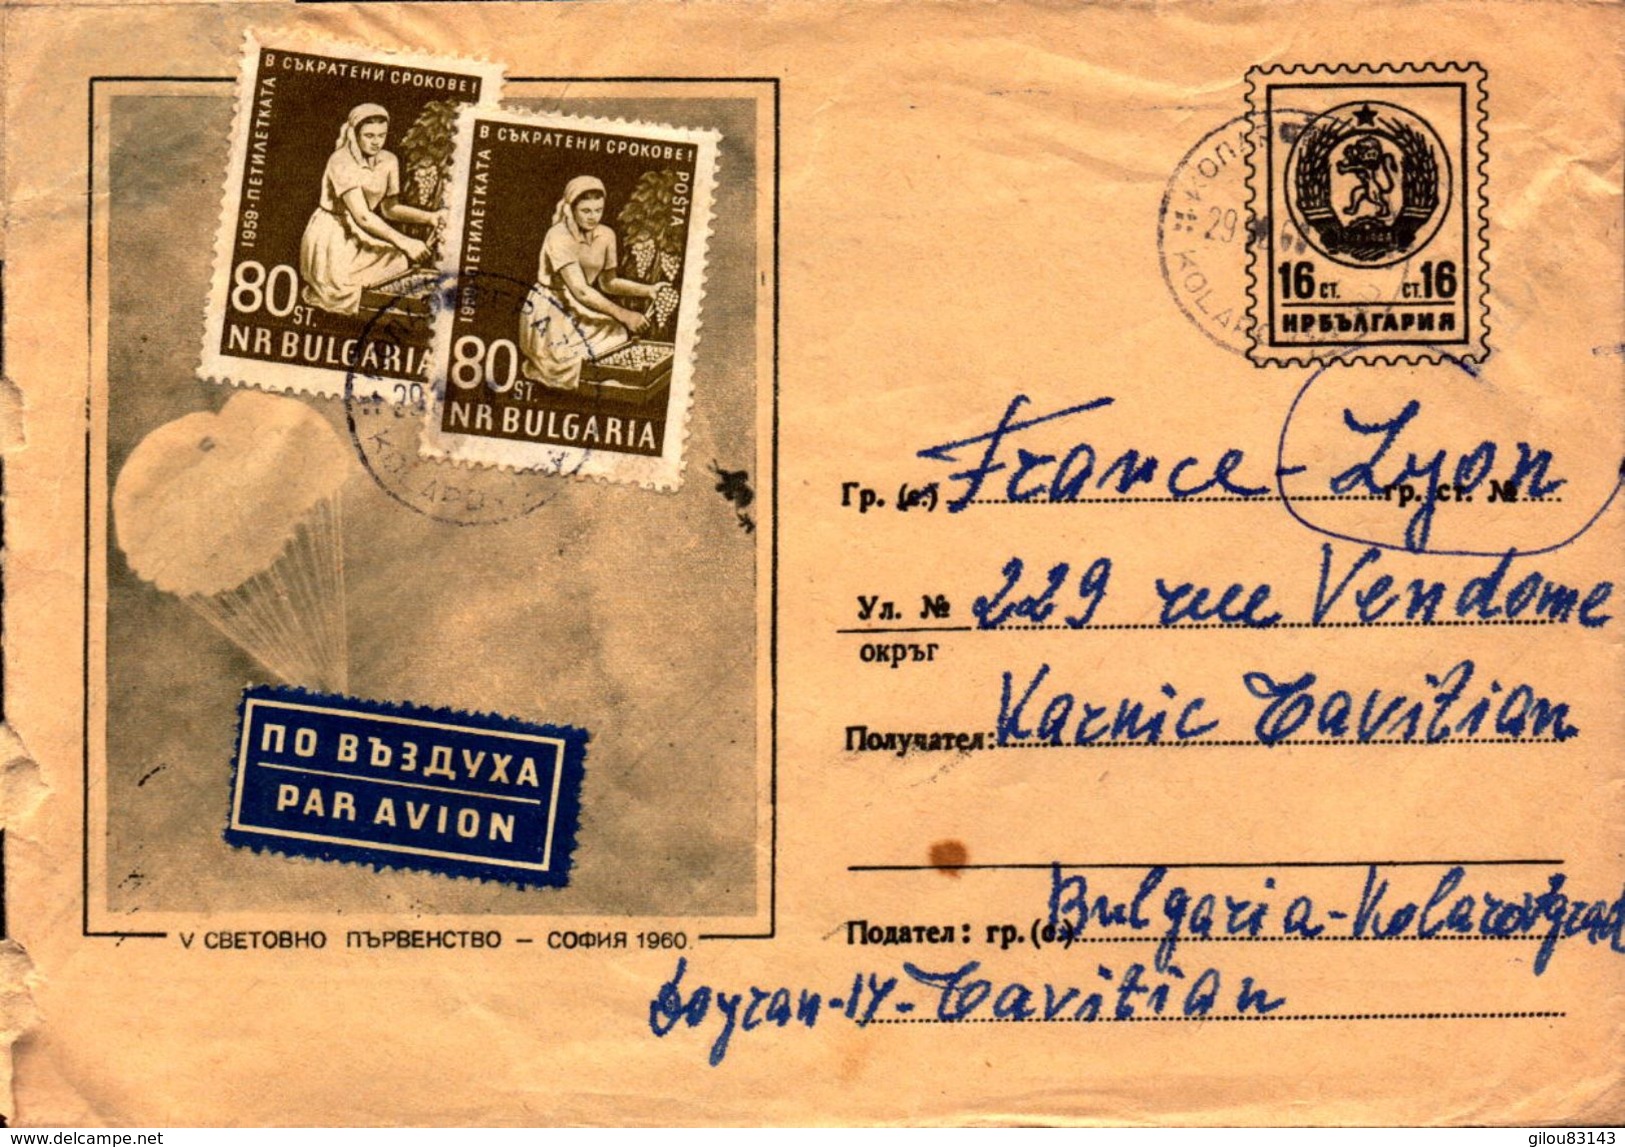 Lot de 12 Lettres de Russie (urss), bulgarie, recommander, entier postaux pour la france    (etat voir photos)